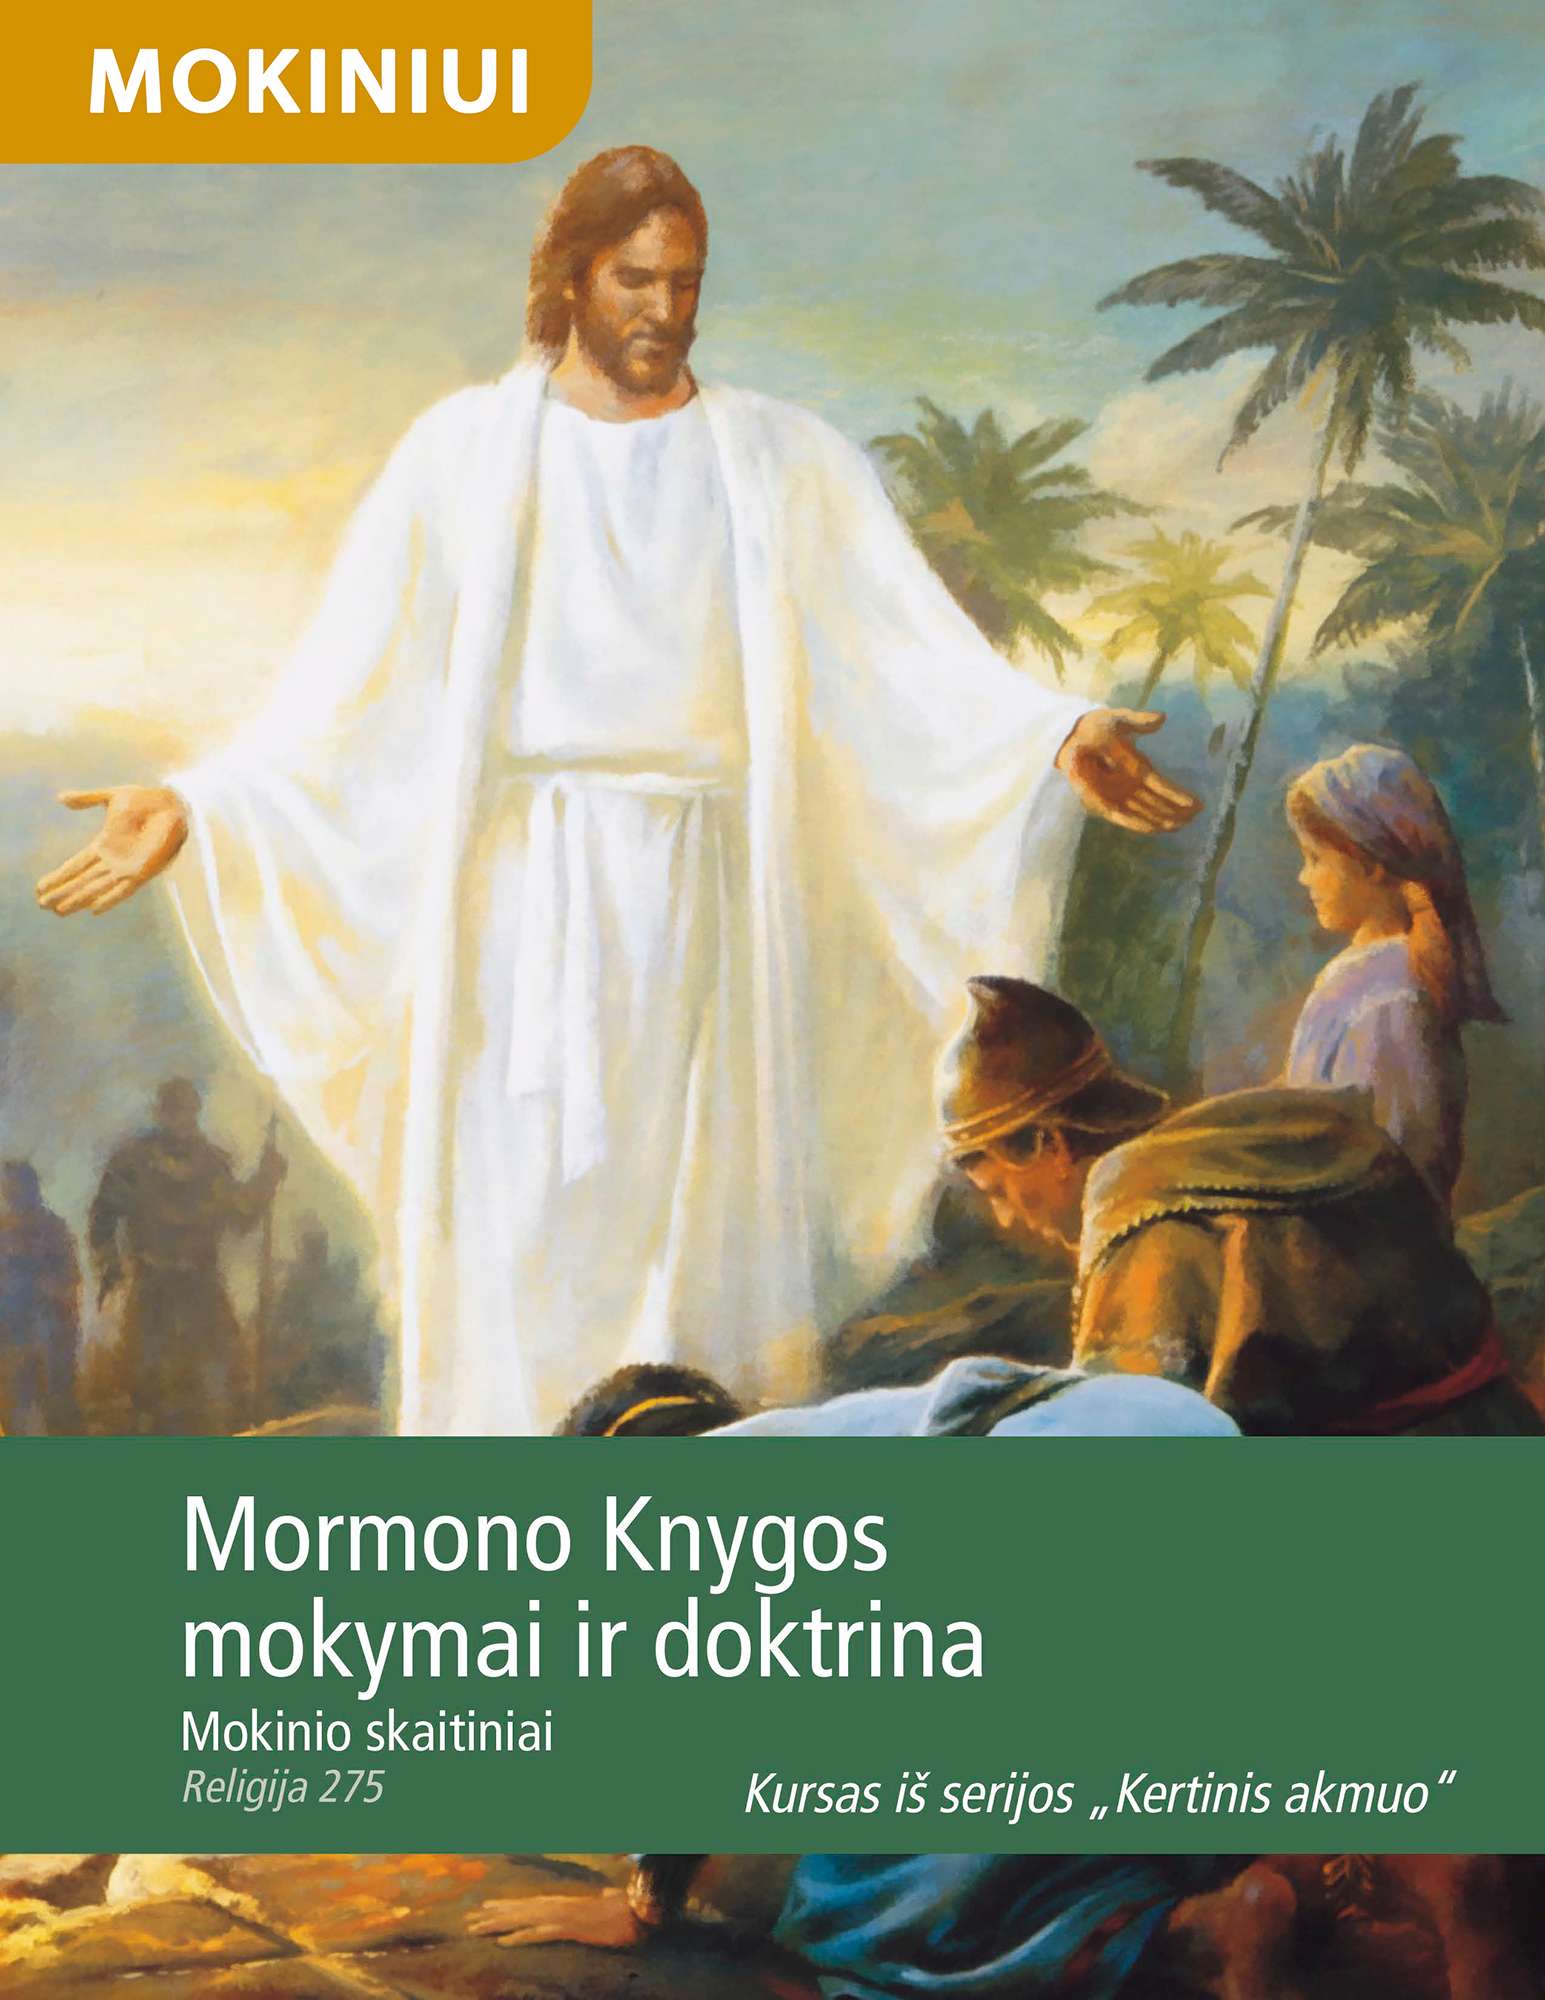 Mormono Knygos mokymai ir doktrina. Mokinio skaitiniai (Rel 275)